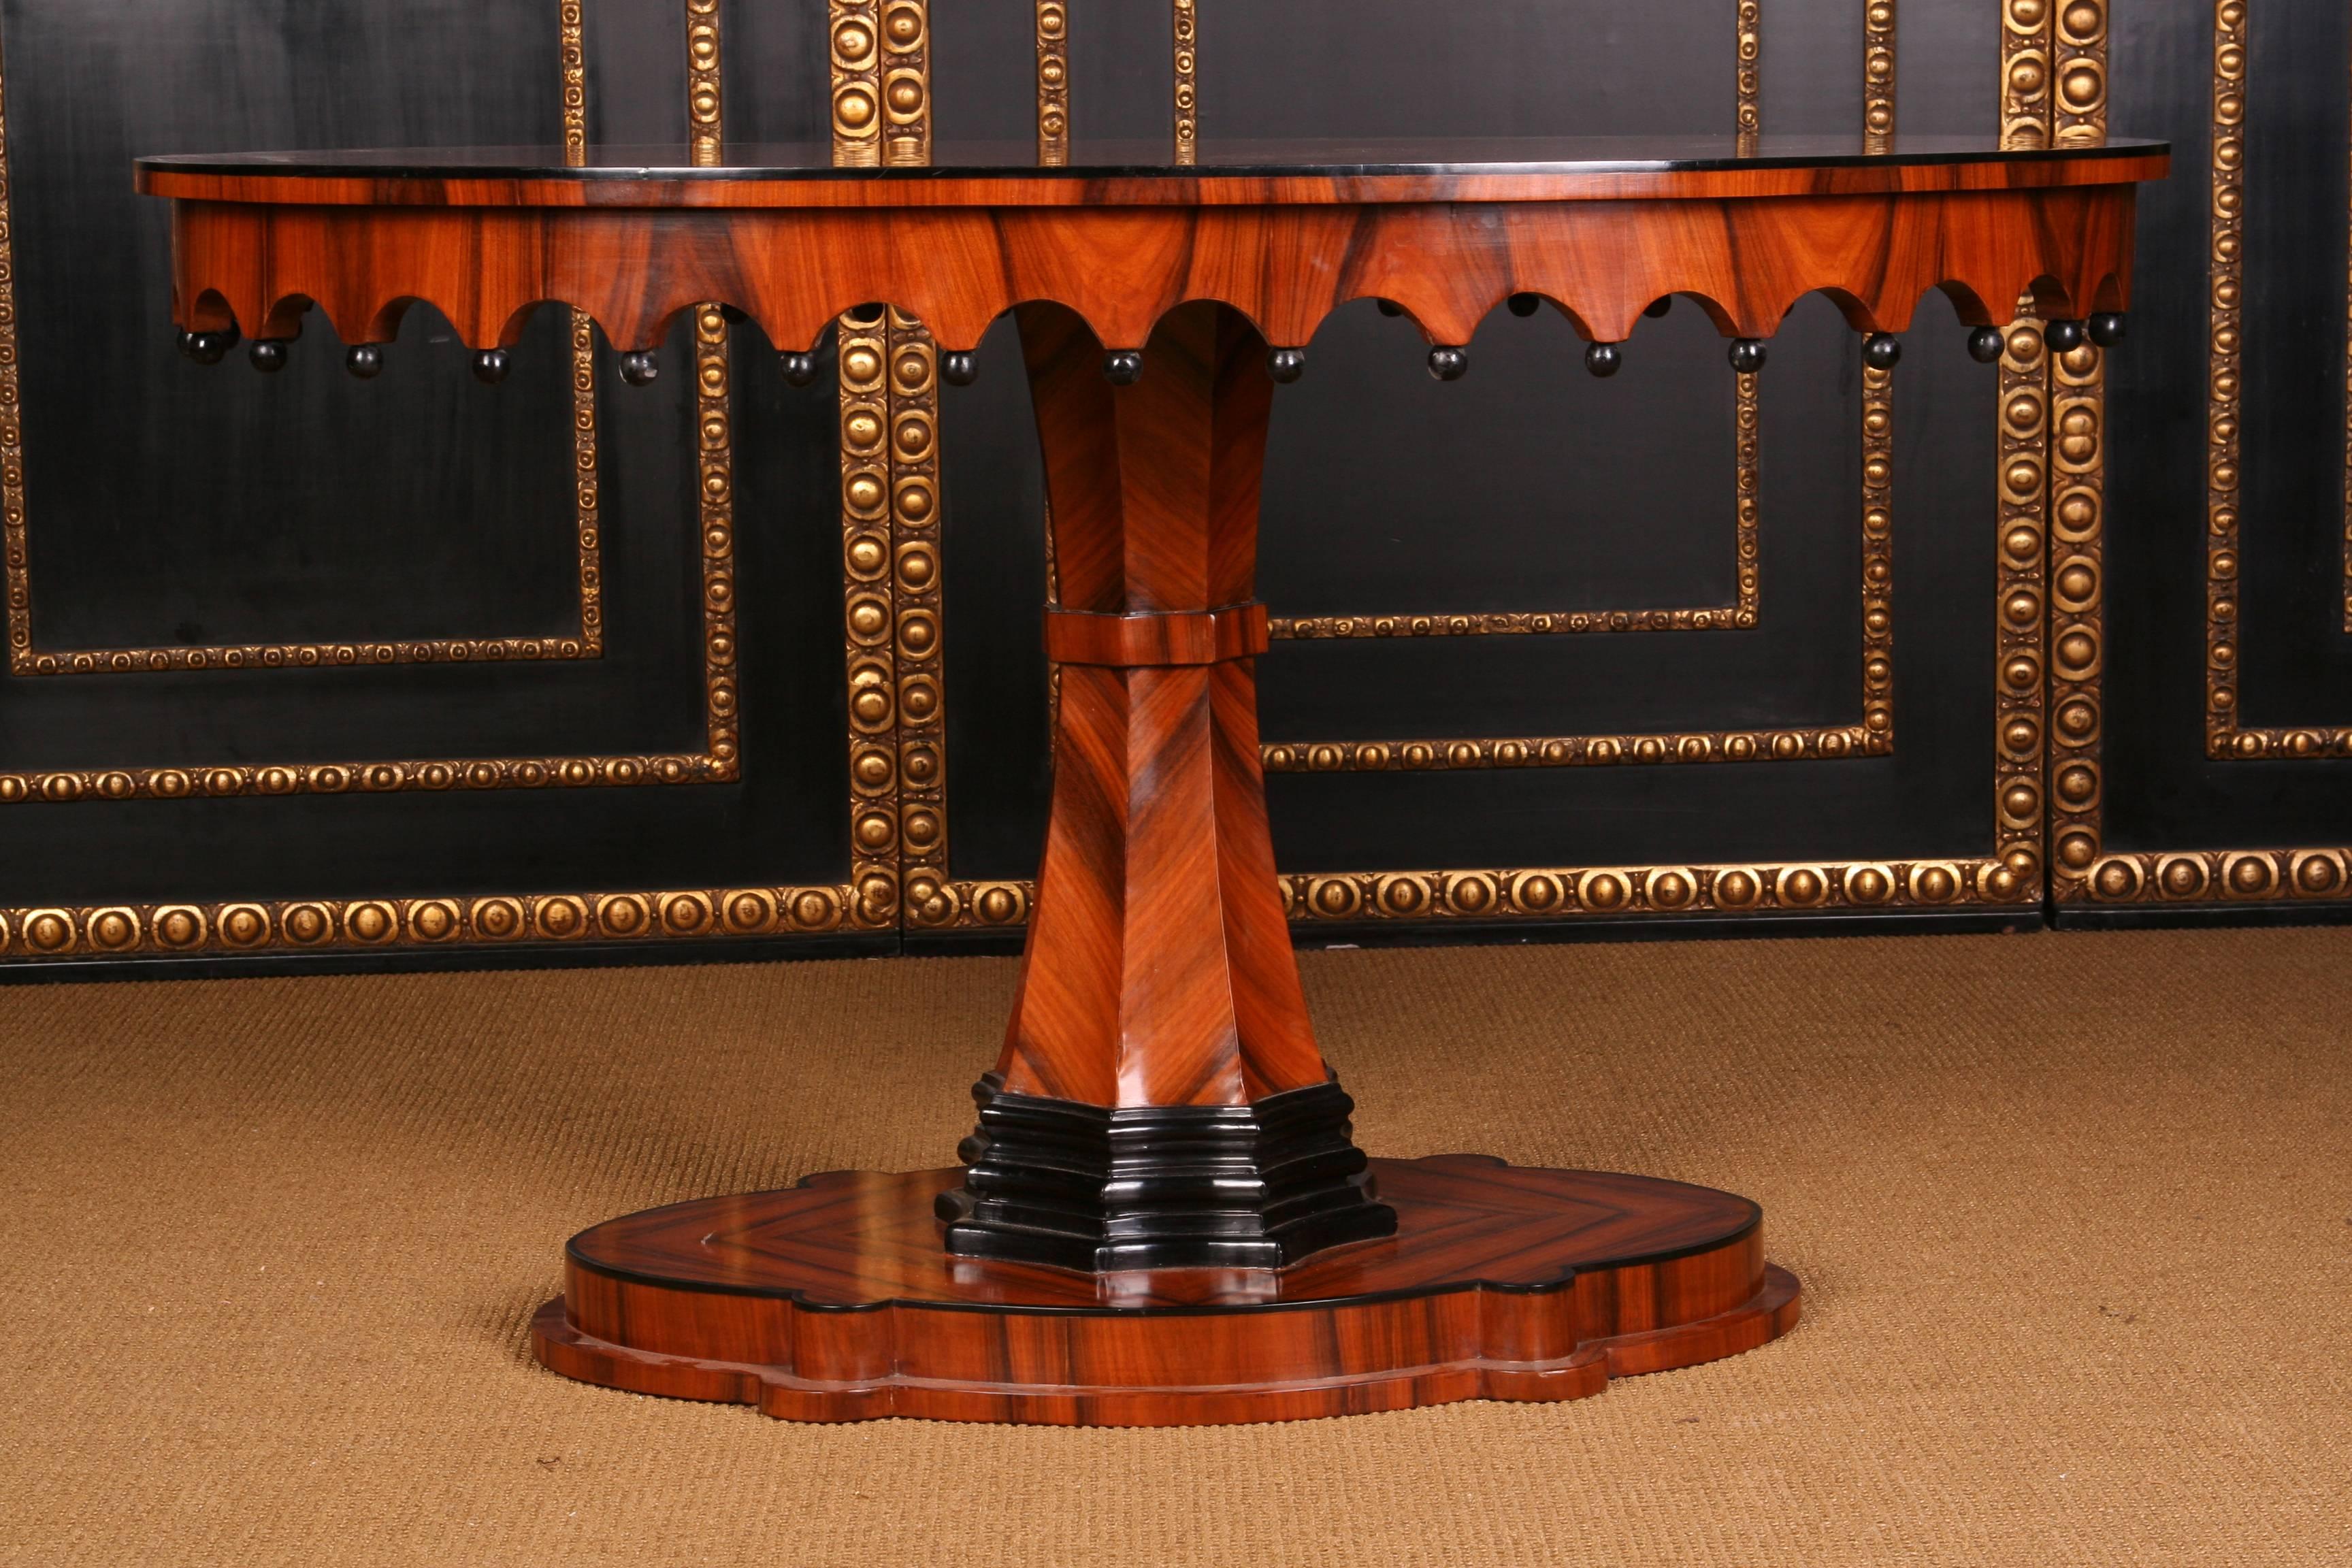 Außergewöhnlich schöner ovaler Tisch im Biedermeier-Stil.
Massivholz, teilweise geschwärzt. Ovaler, gewölbter und profilierter Sockel. Mittlerer aufsteigender, achtfach gesäumter, fächerförmiger Säulenschaft, teilweise geschwärzt. Gotischer Rahmen